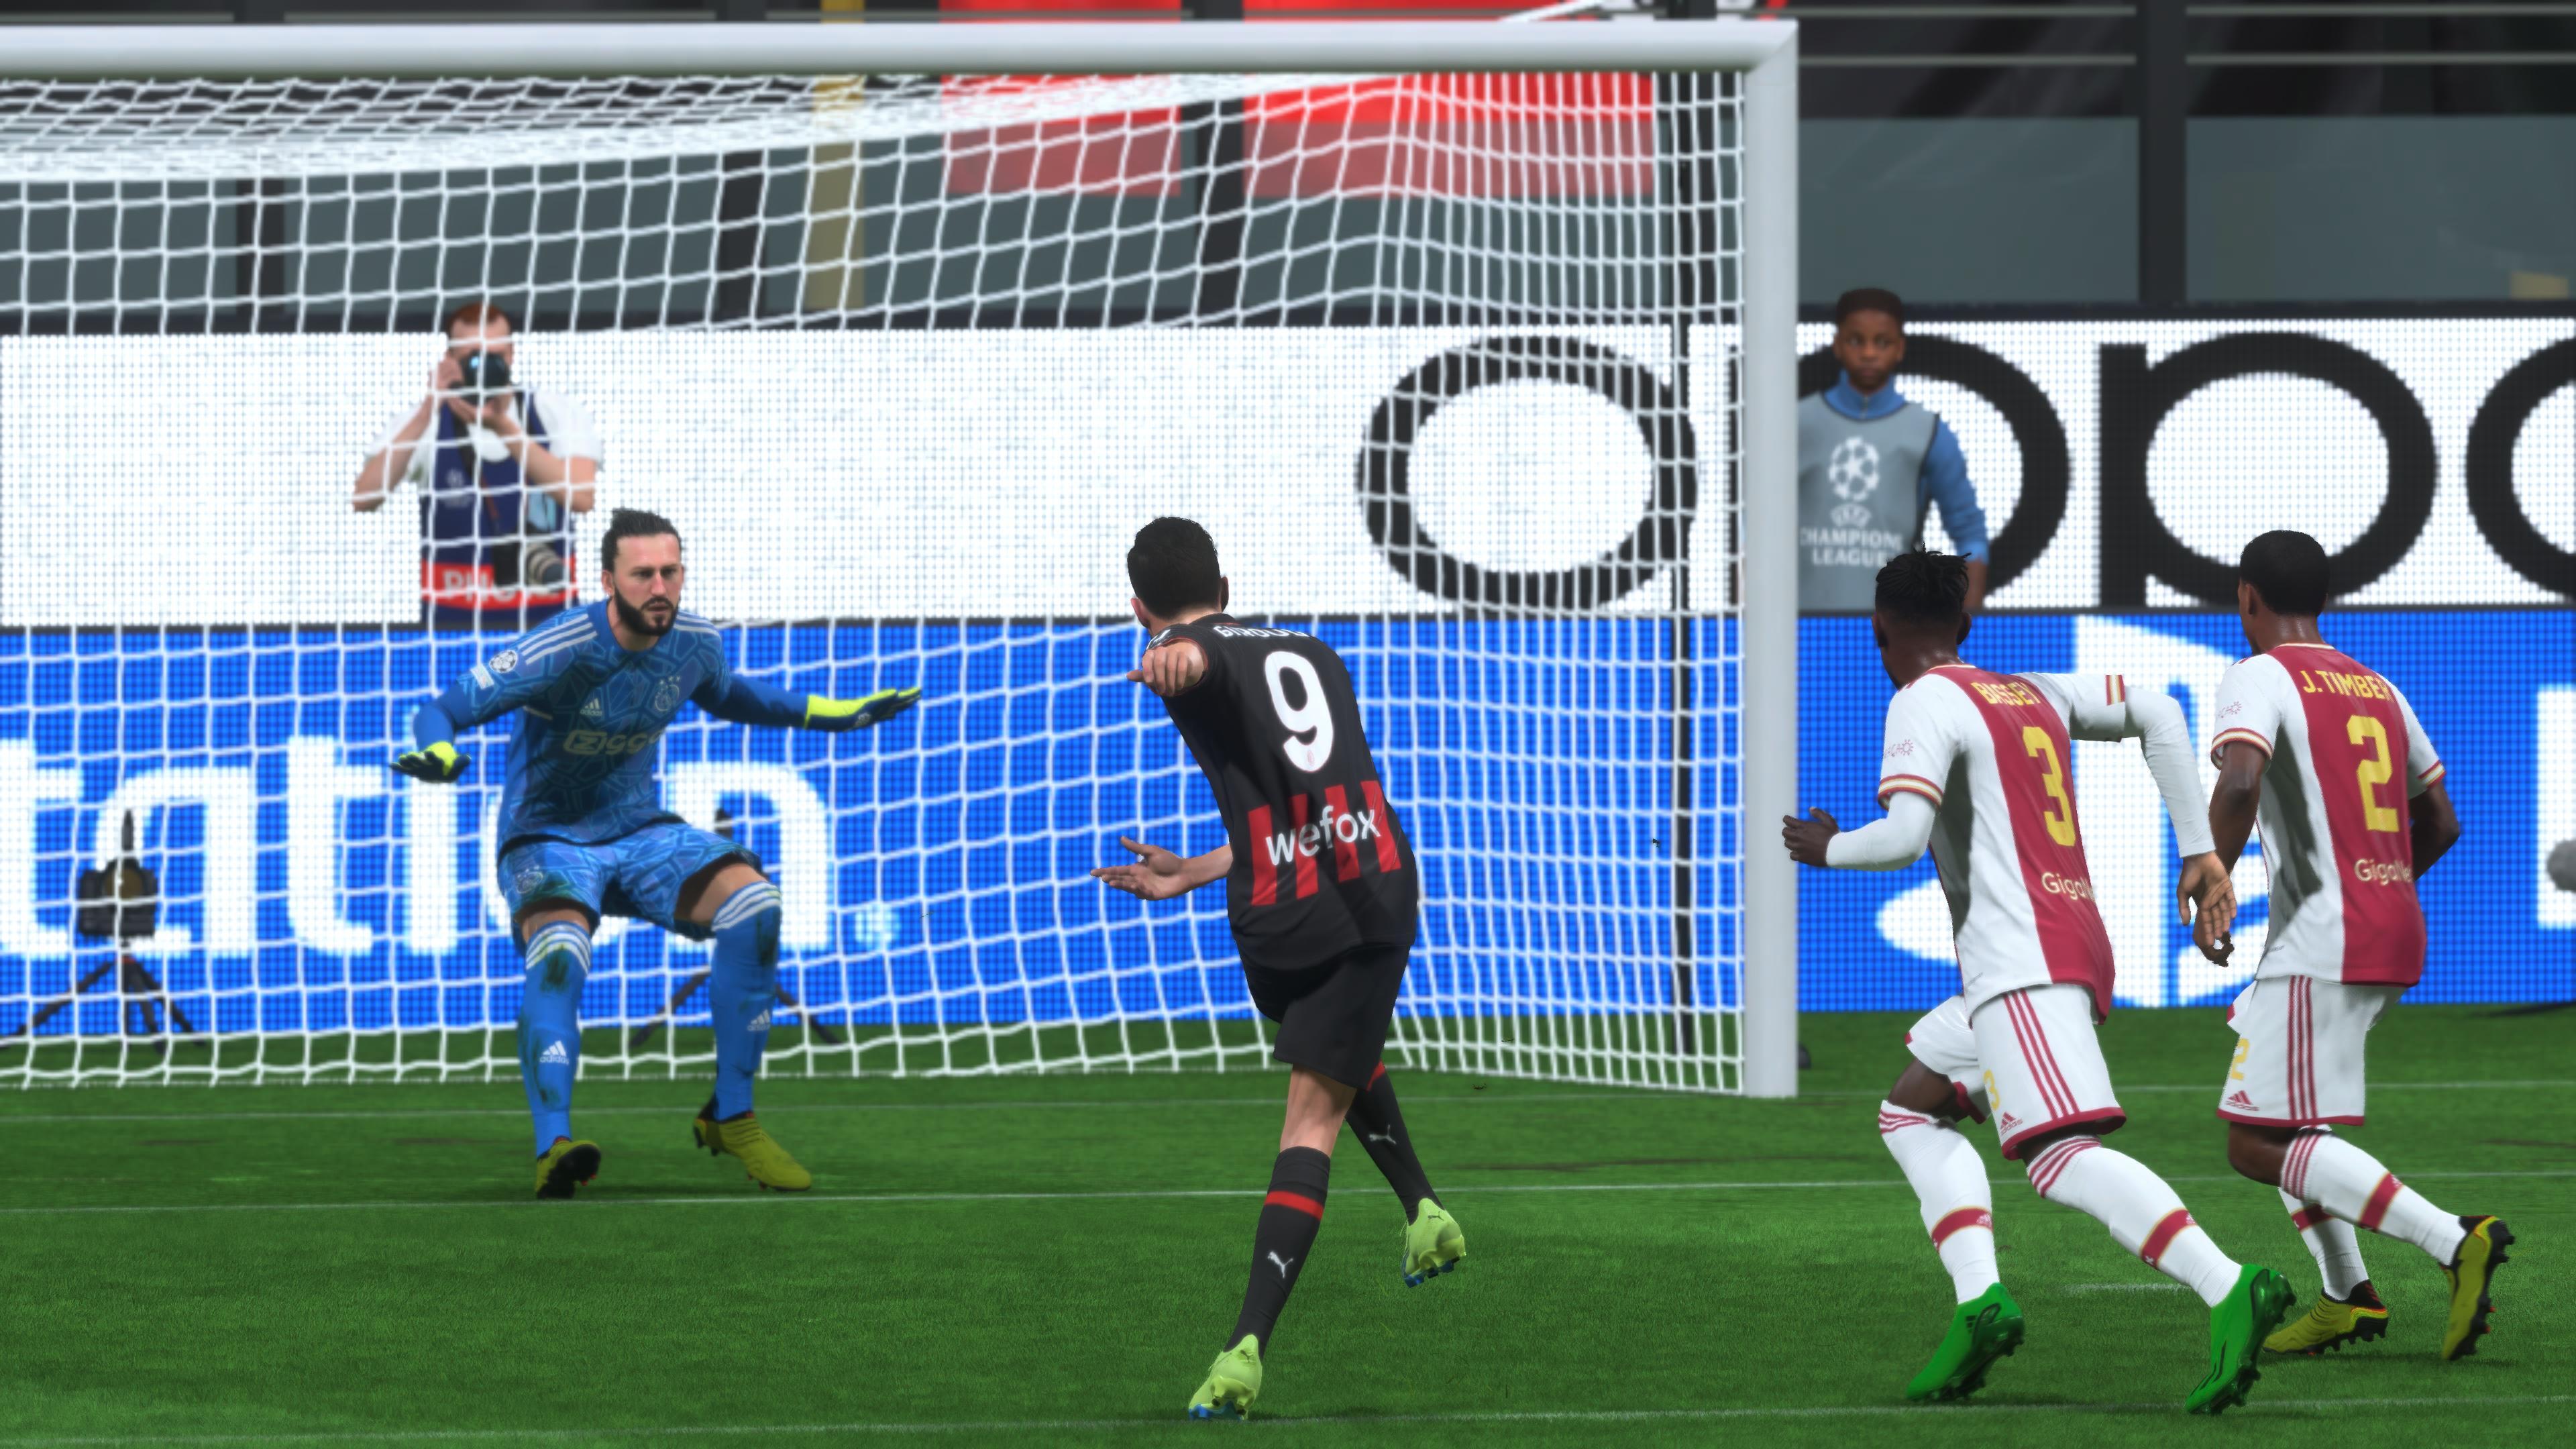 FIFA 23 Feedback & Reviews – FIFPlay